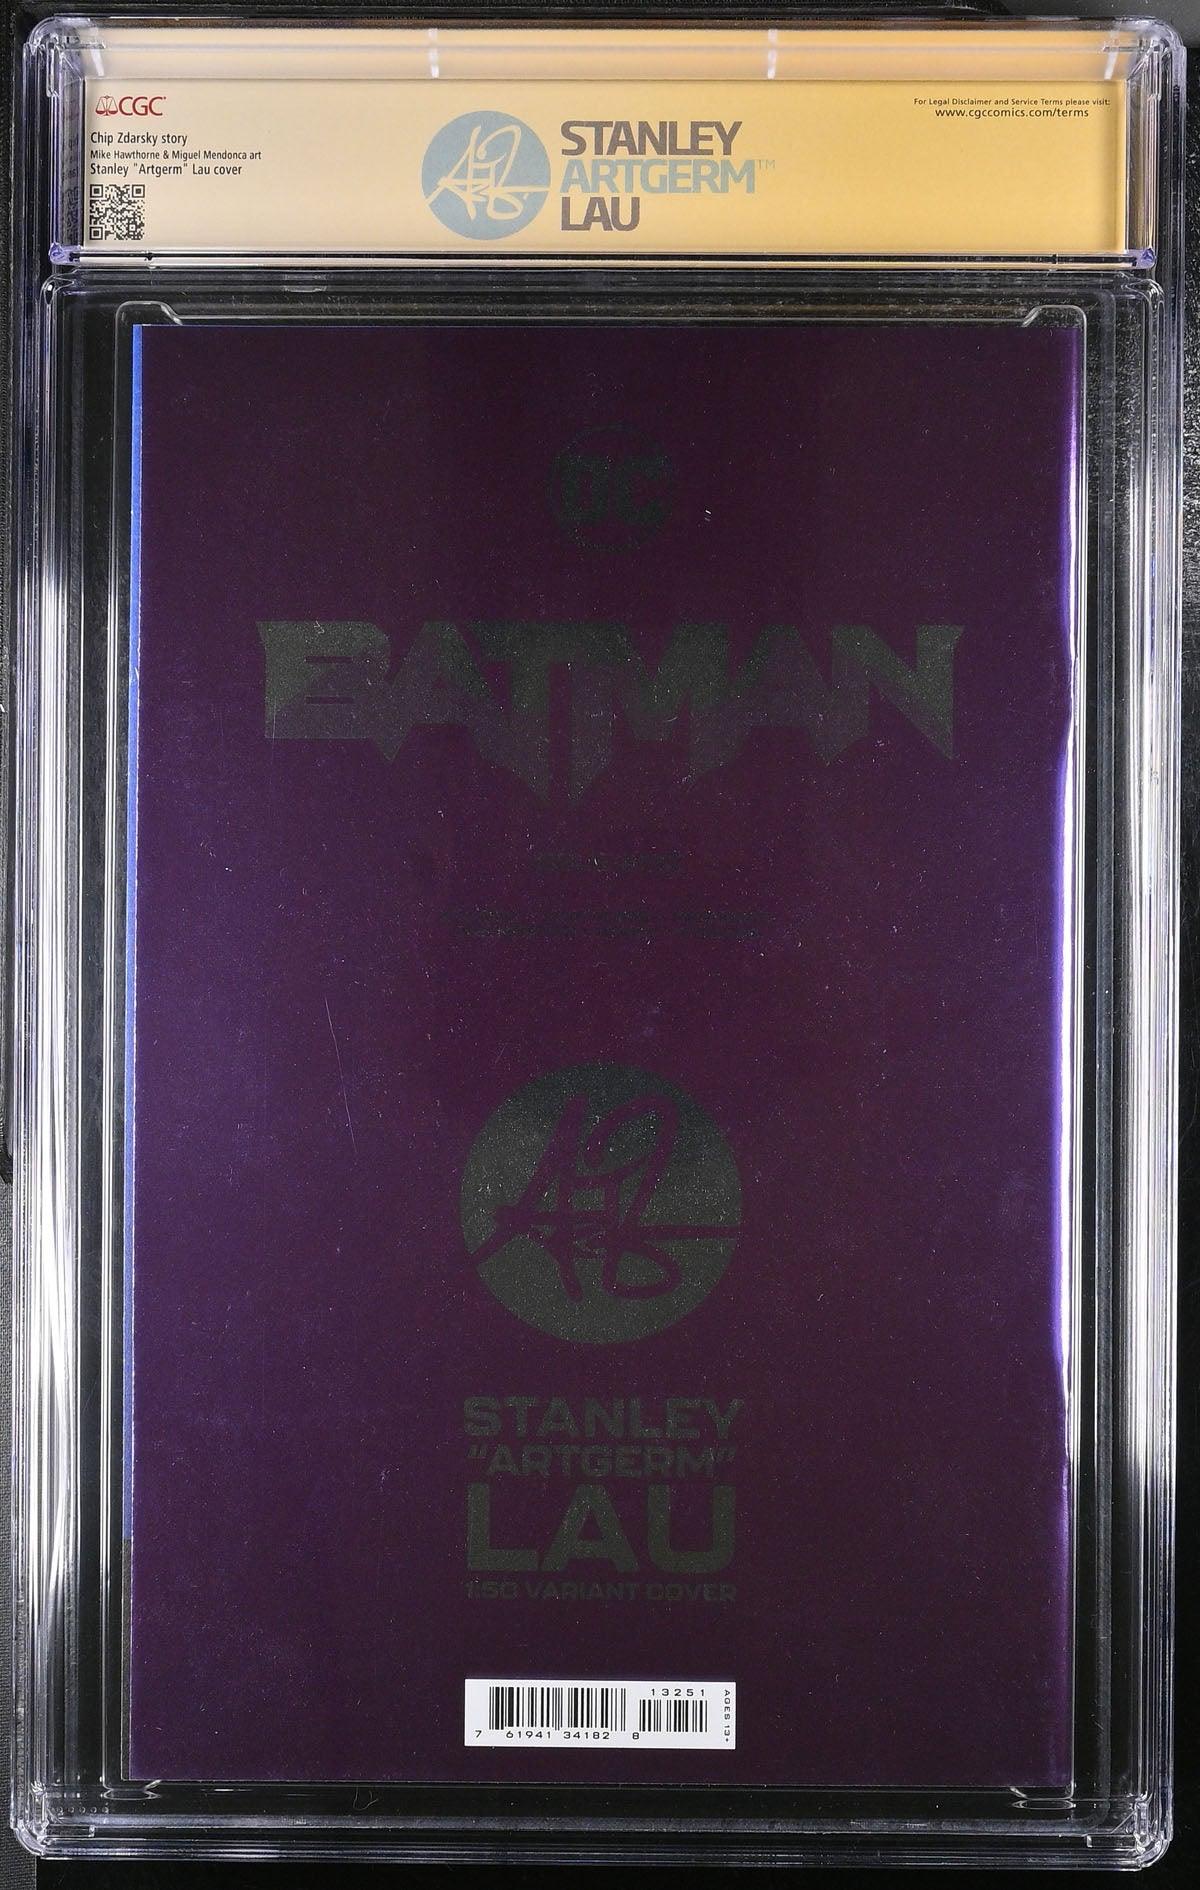 CGC BATMAN VOL 3 #132 LAU FOIL EDITION (9.8) SIGNATURE SERIES - SIGNED BY STANLEY "ARTGERM"